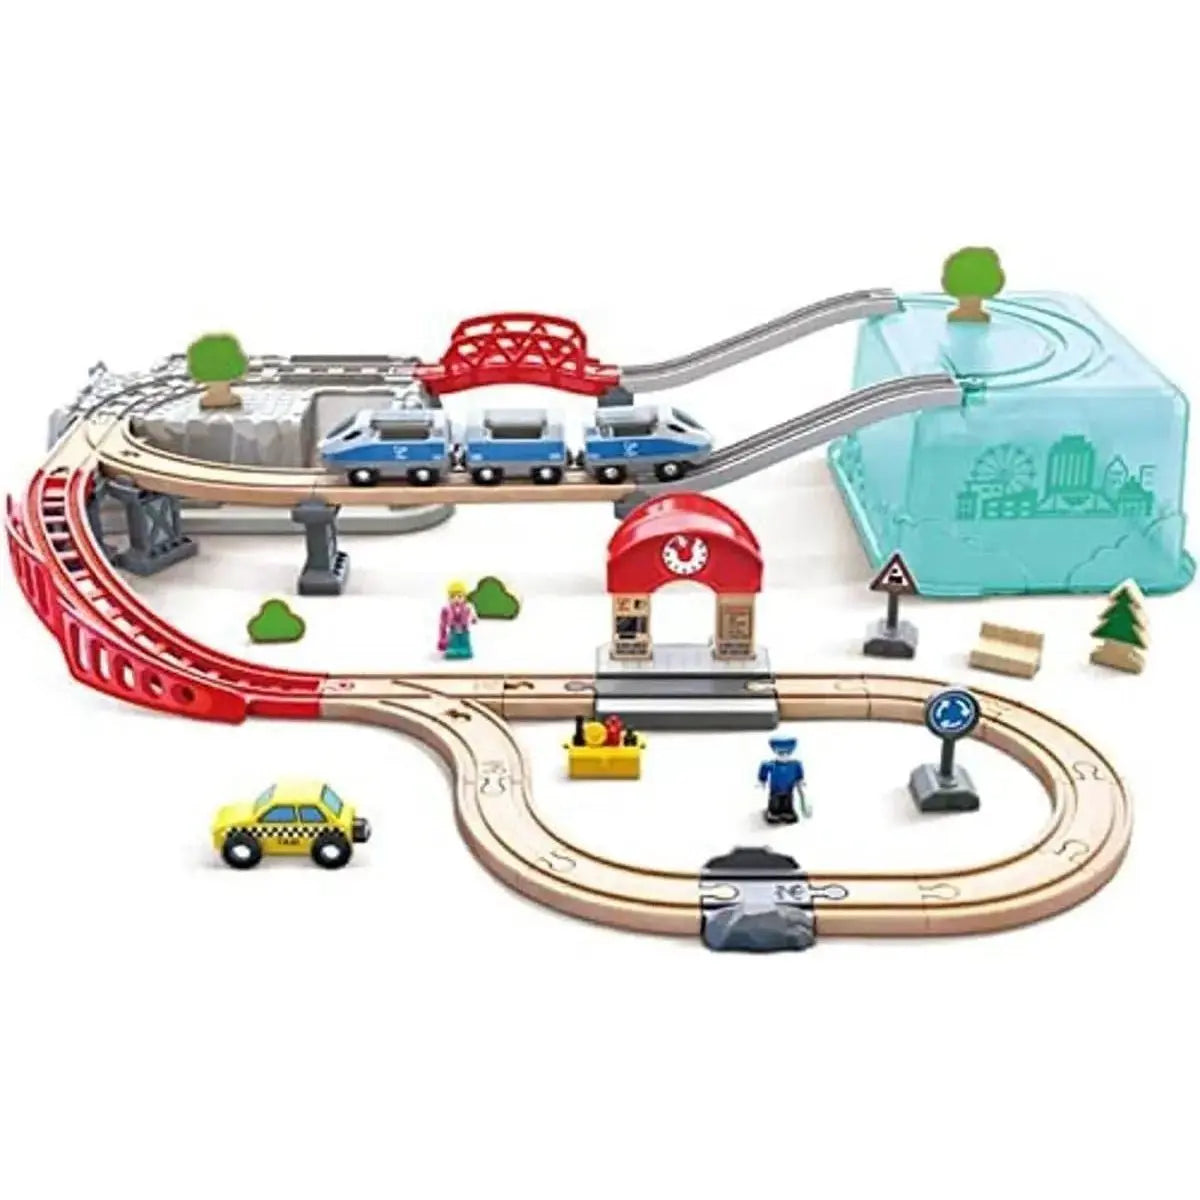 Circuit train en Bois - Secours - Hape Toys